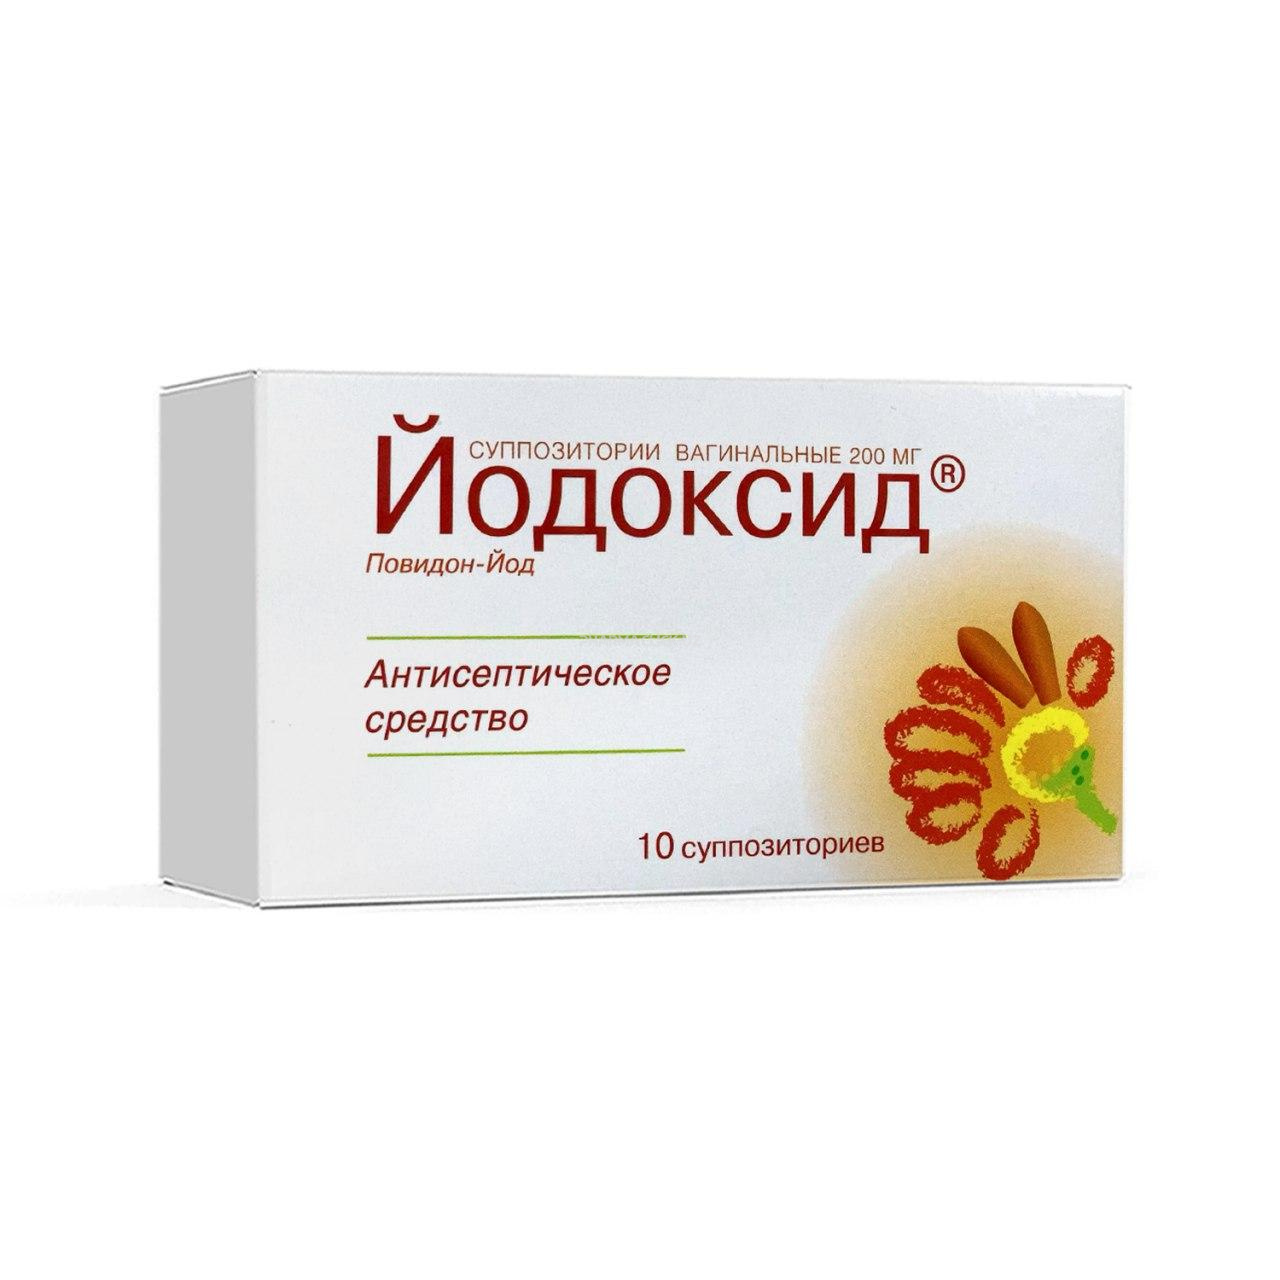 Yodoksid vaginal suppozitoriylar 200 mg. №10 (Nijfarm)